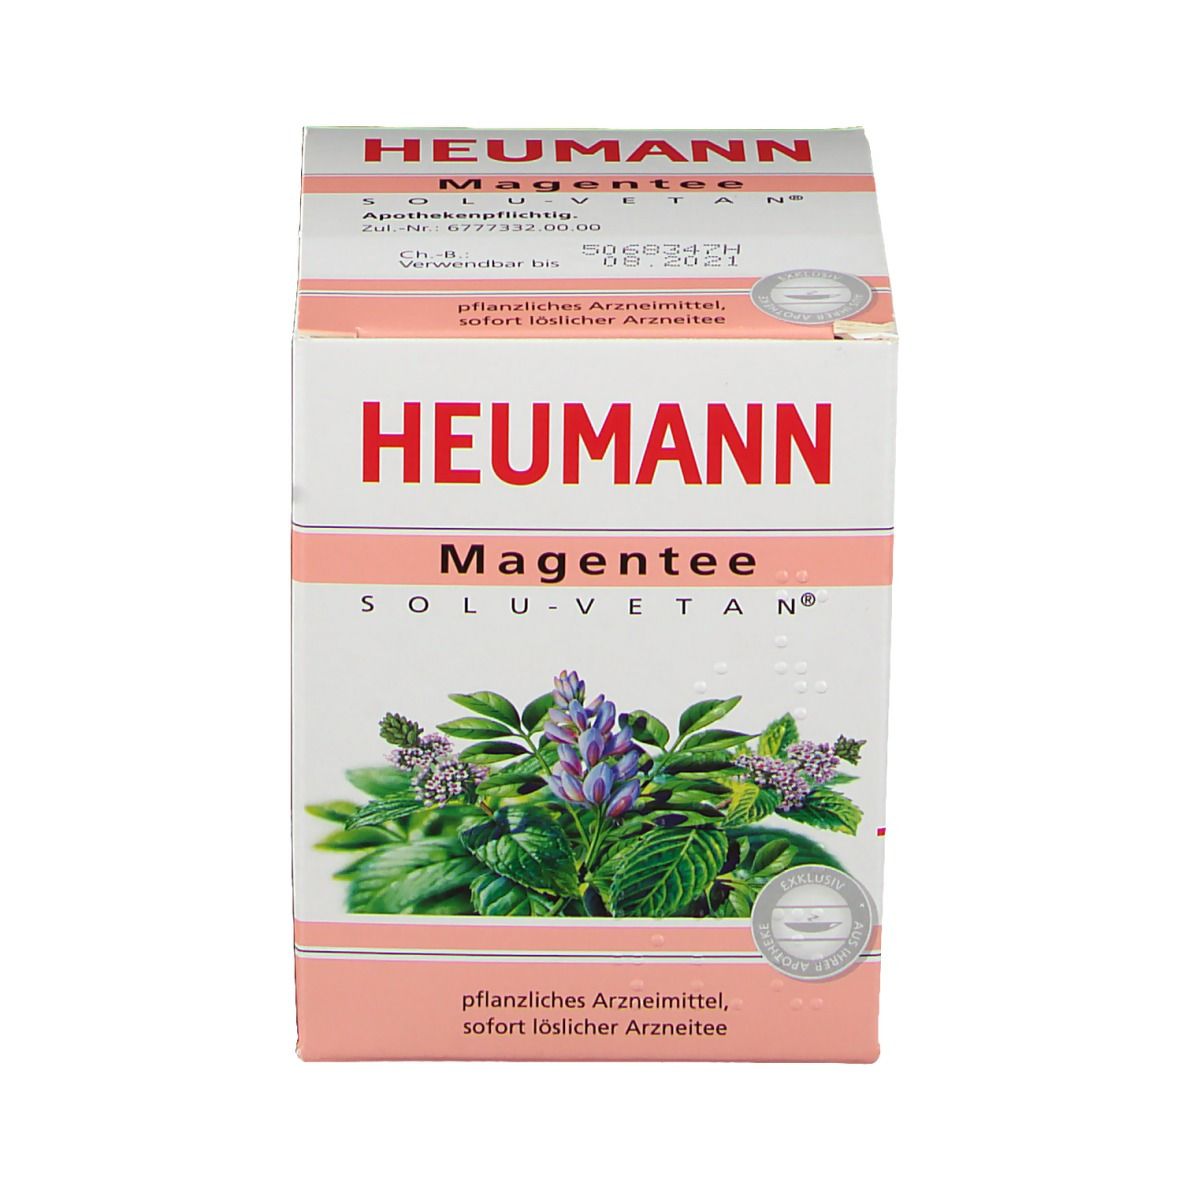 Heumann Magentee SOLU-VETAN®